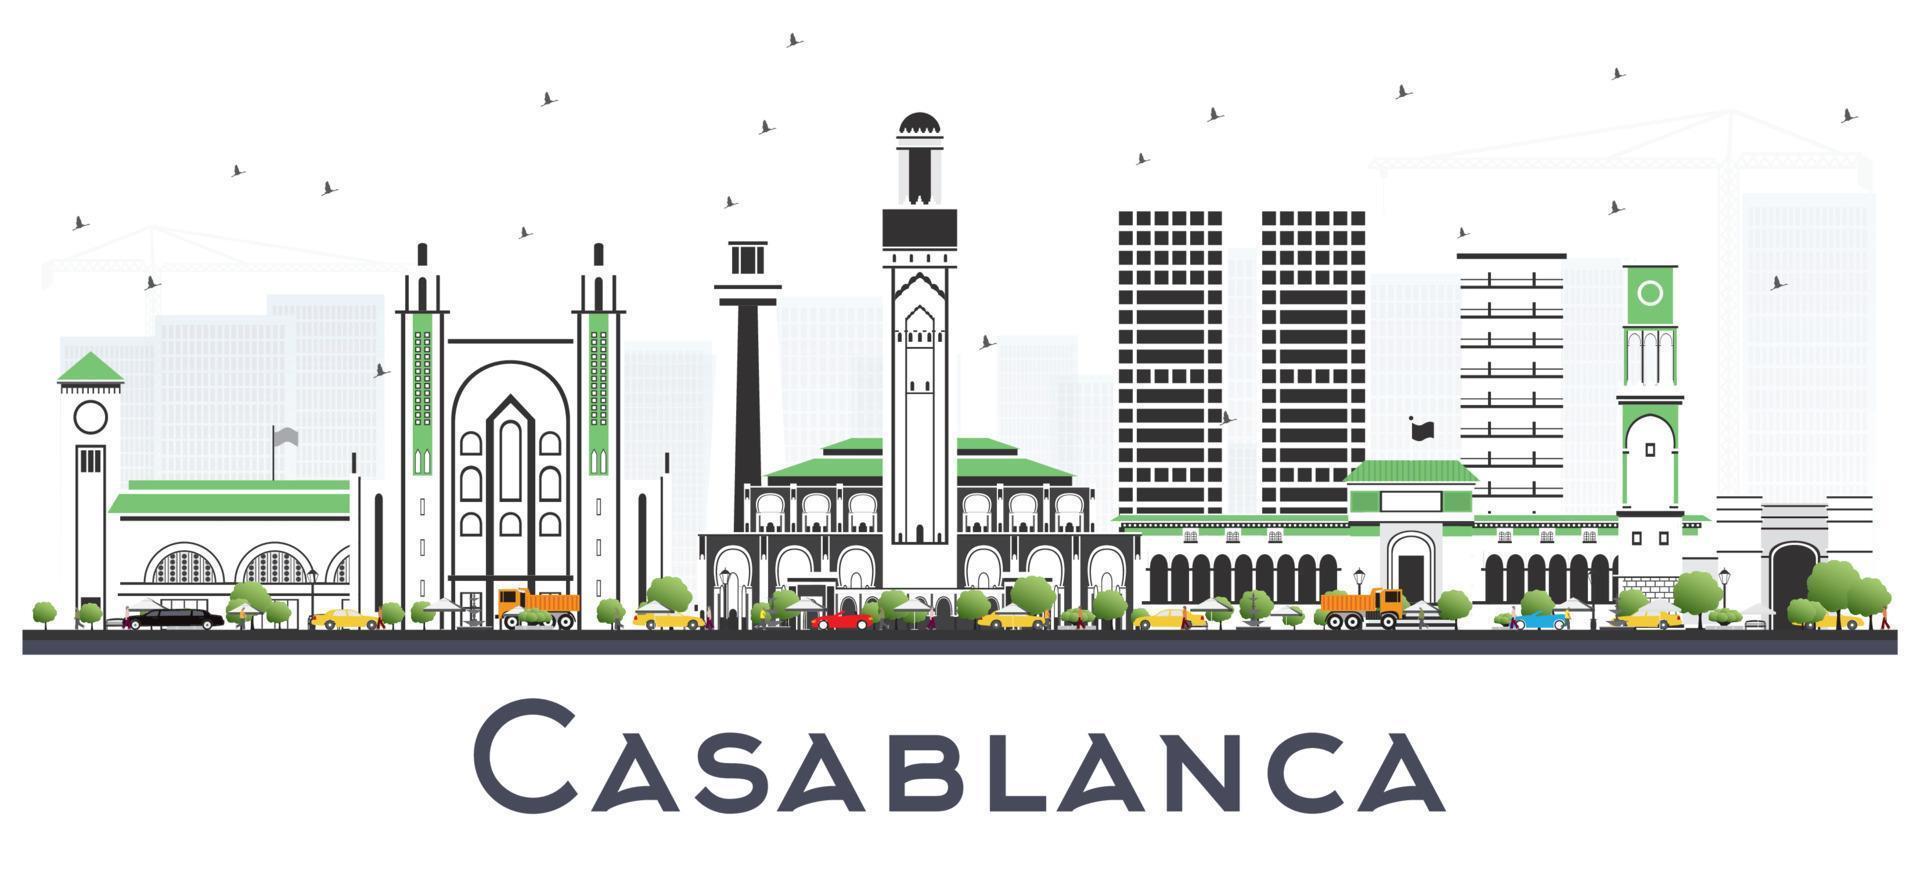 casablanca marokko stadtskyline mit grauen gebäuden isoliert auf weiß. vektor